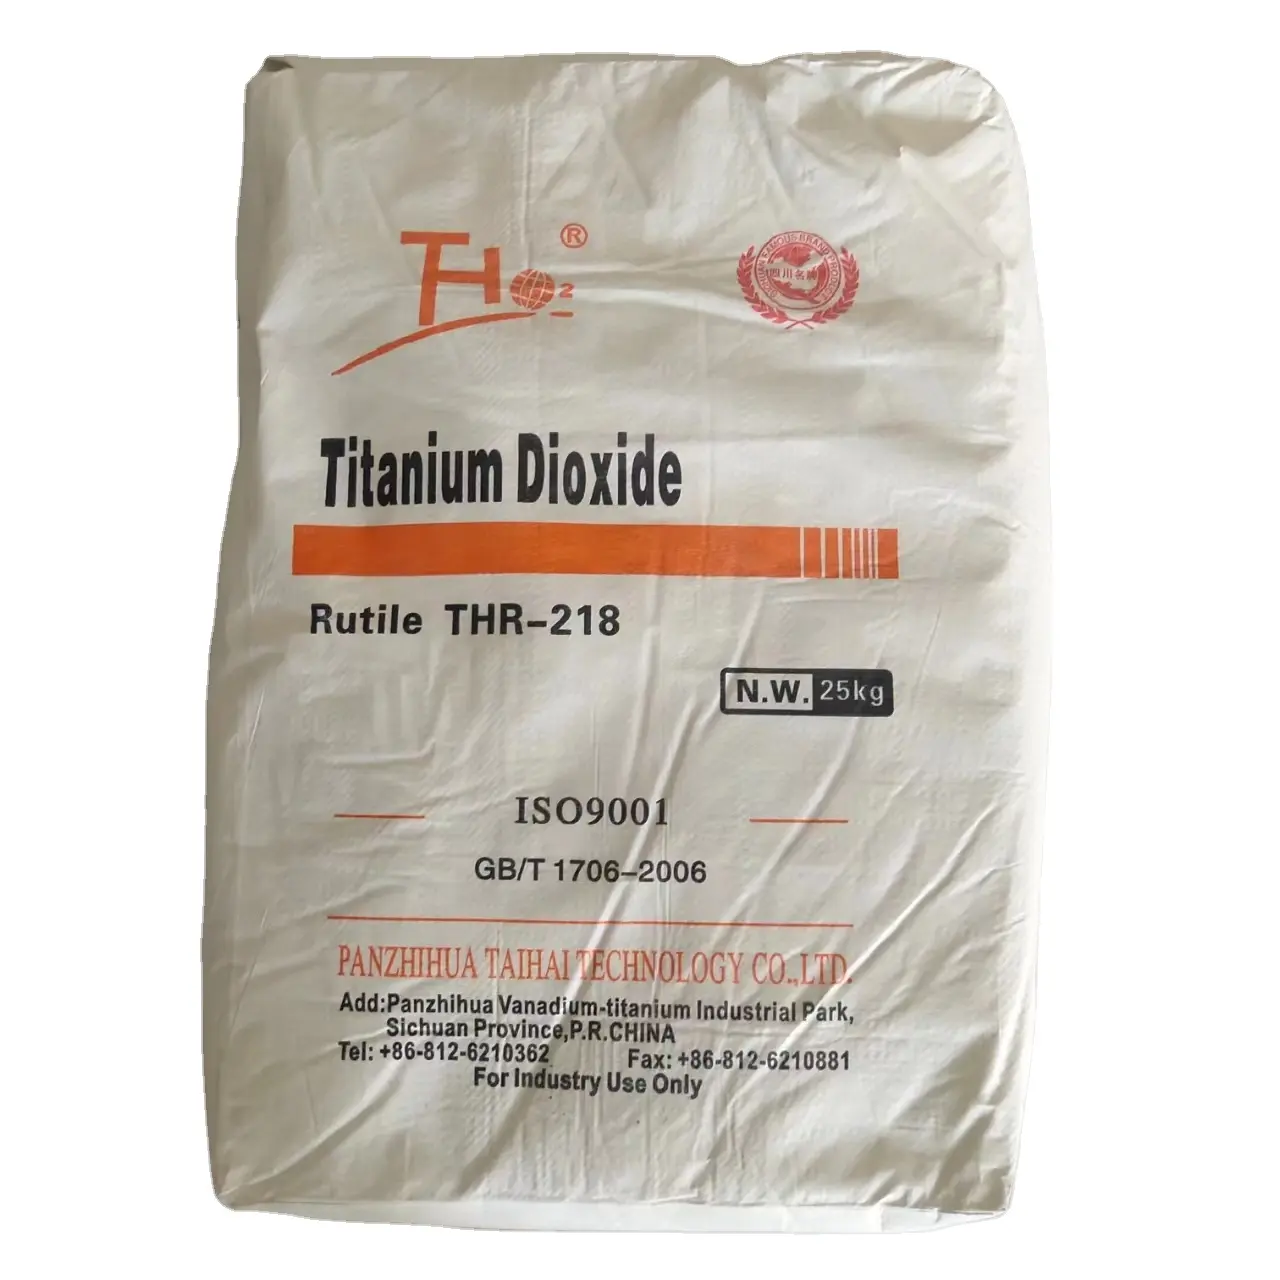 이산화 티타늄 잉크 코팅 페인트 INK THR218 가격 이산화 티타늄 루틸 등급 thr218 저렴한 가격 티시